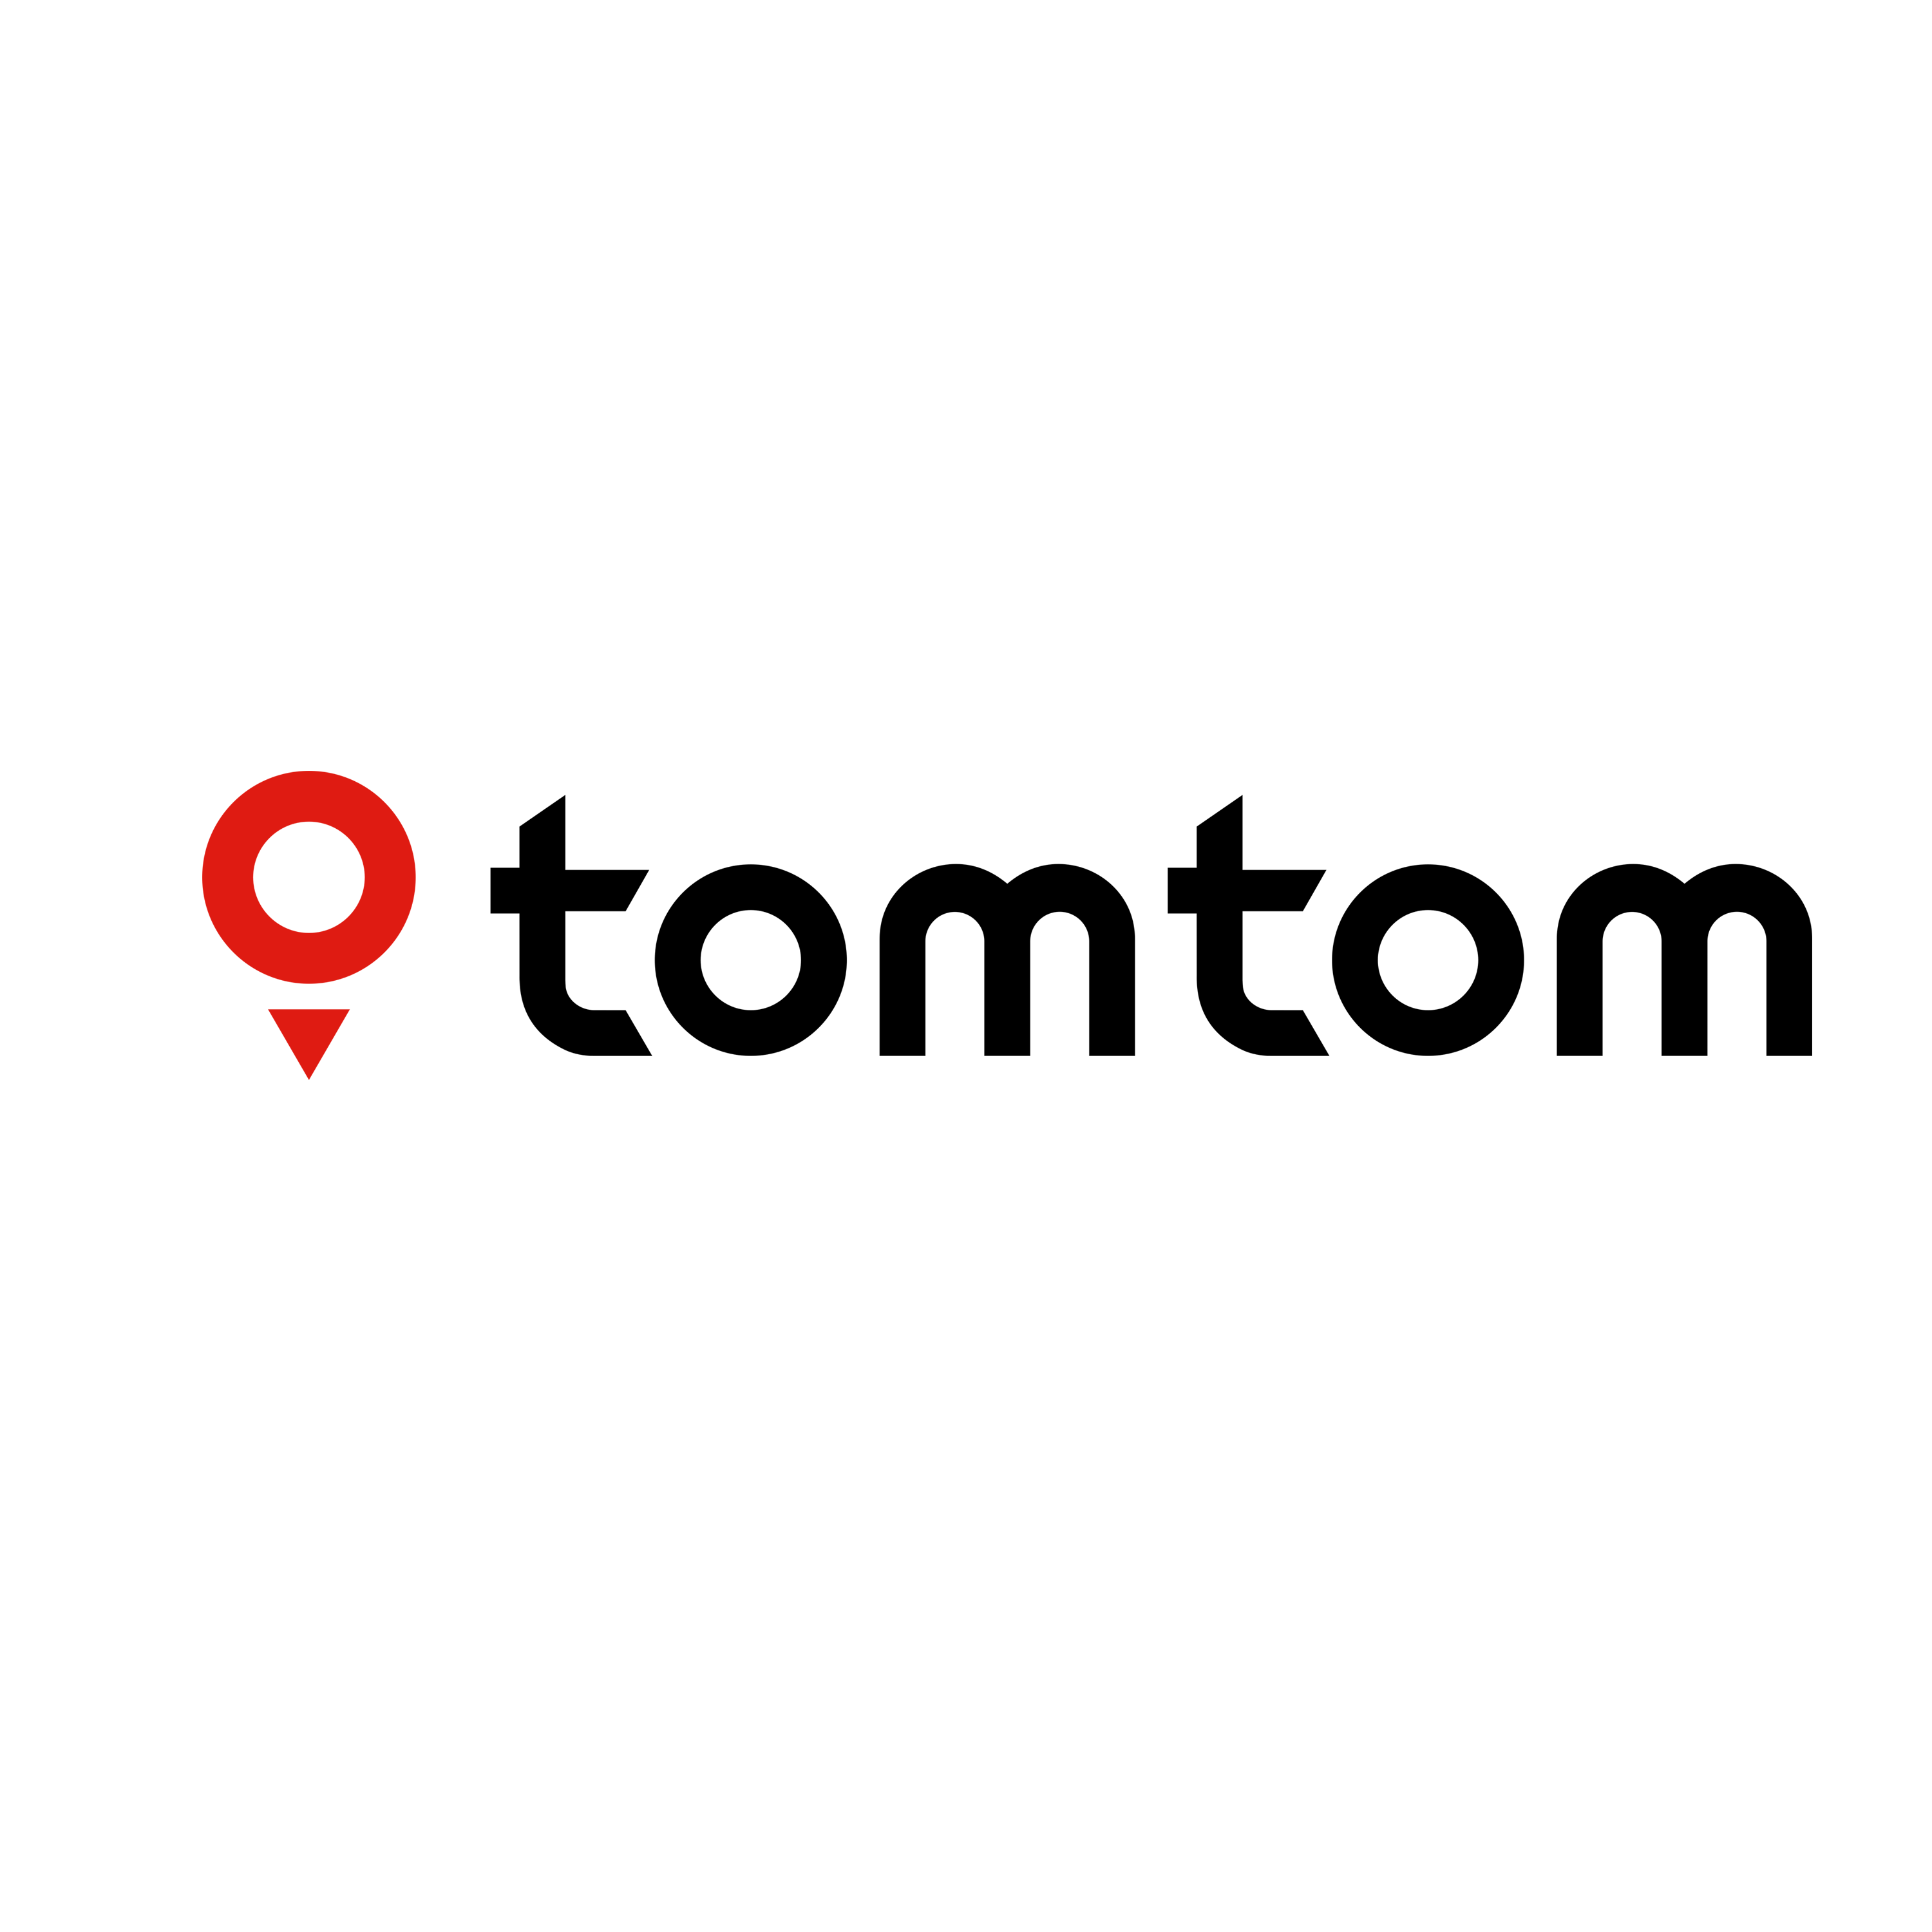 Tomtom Logo Transparent Picture